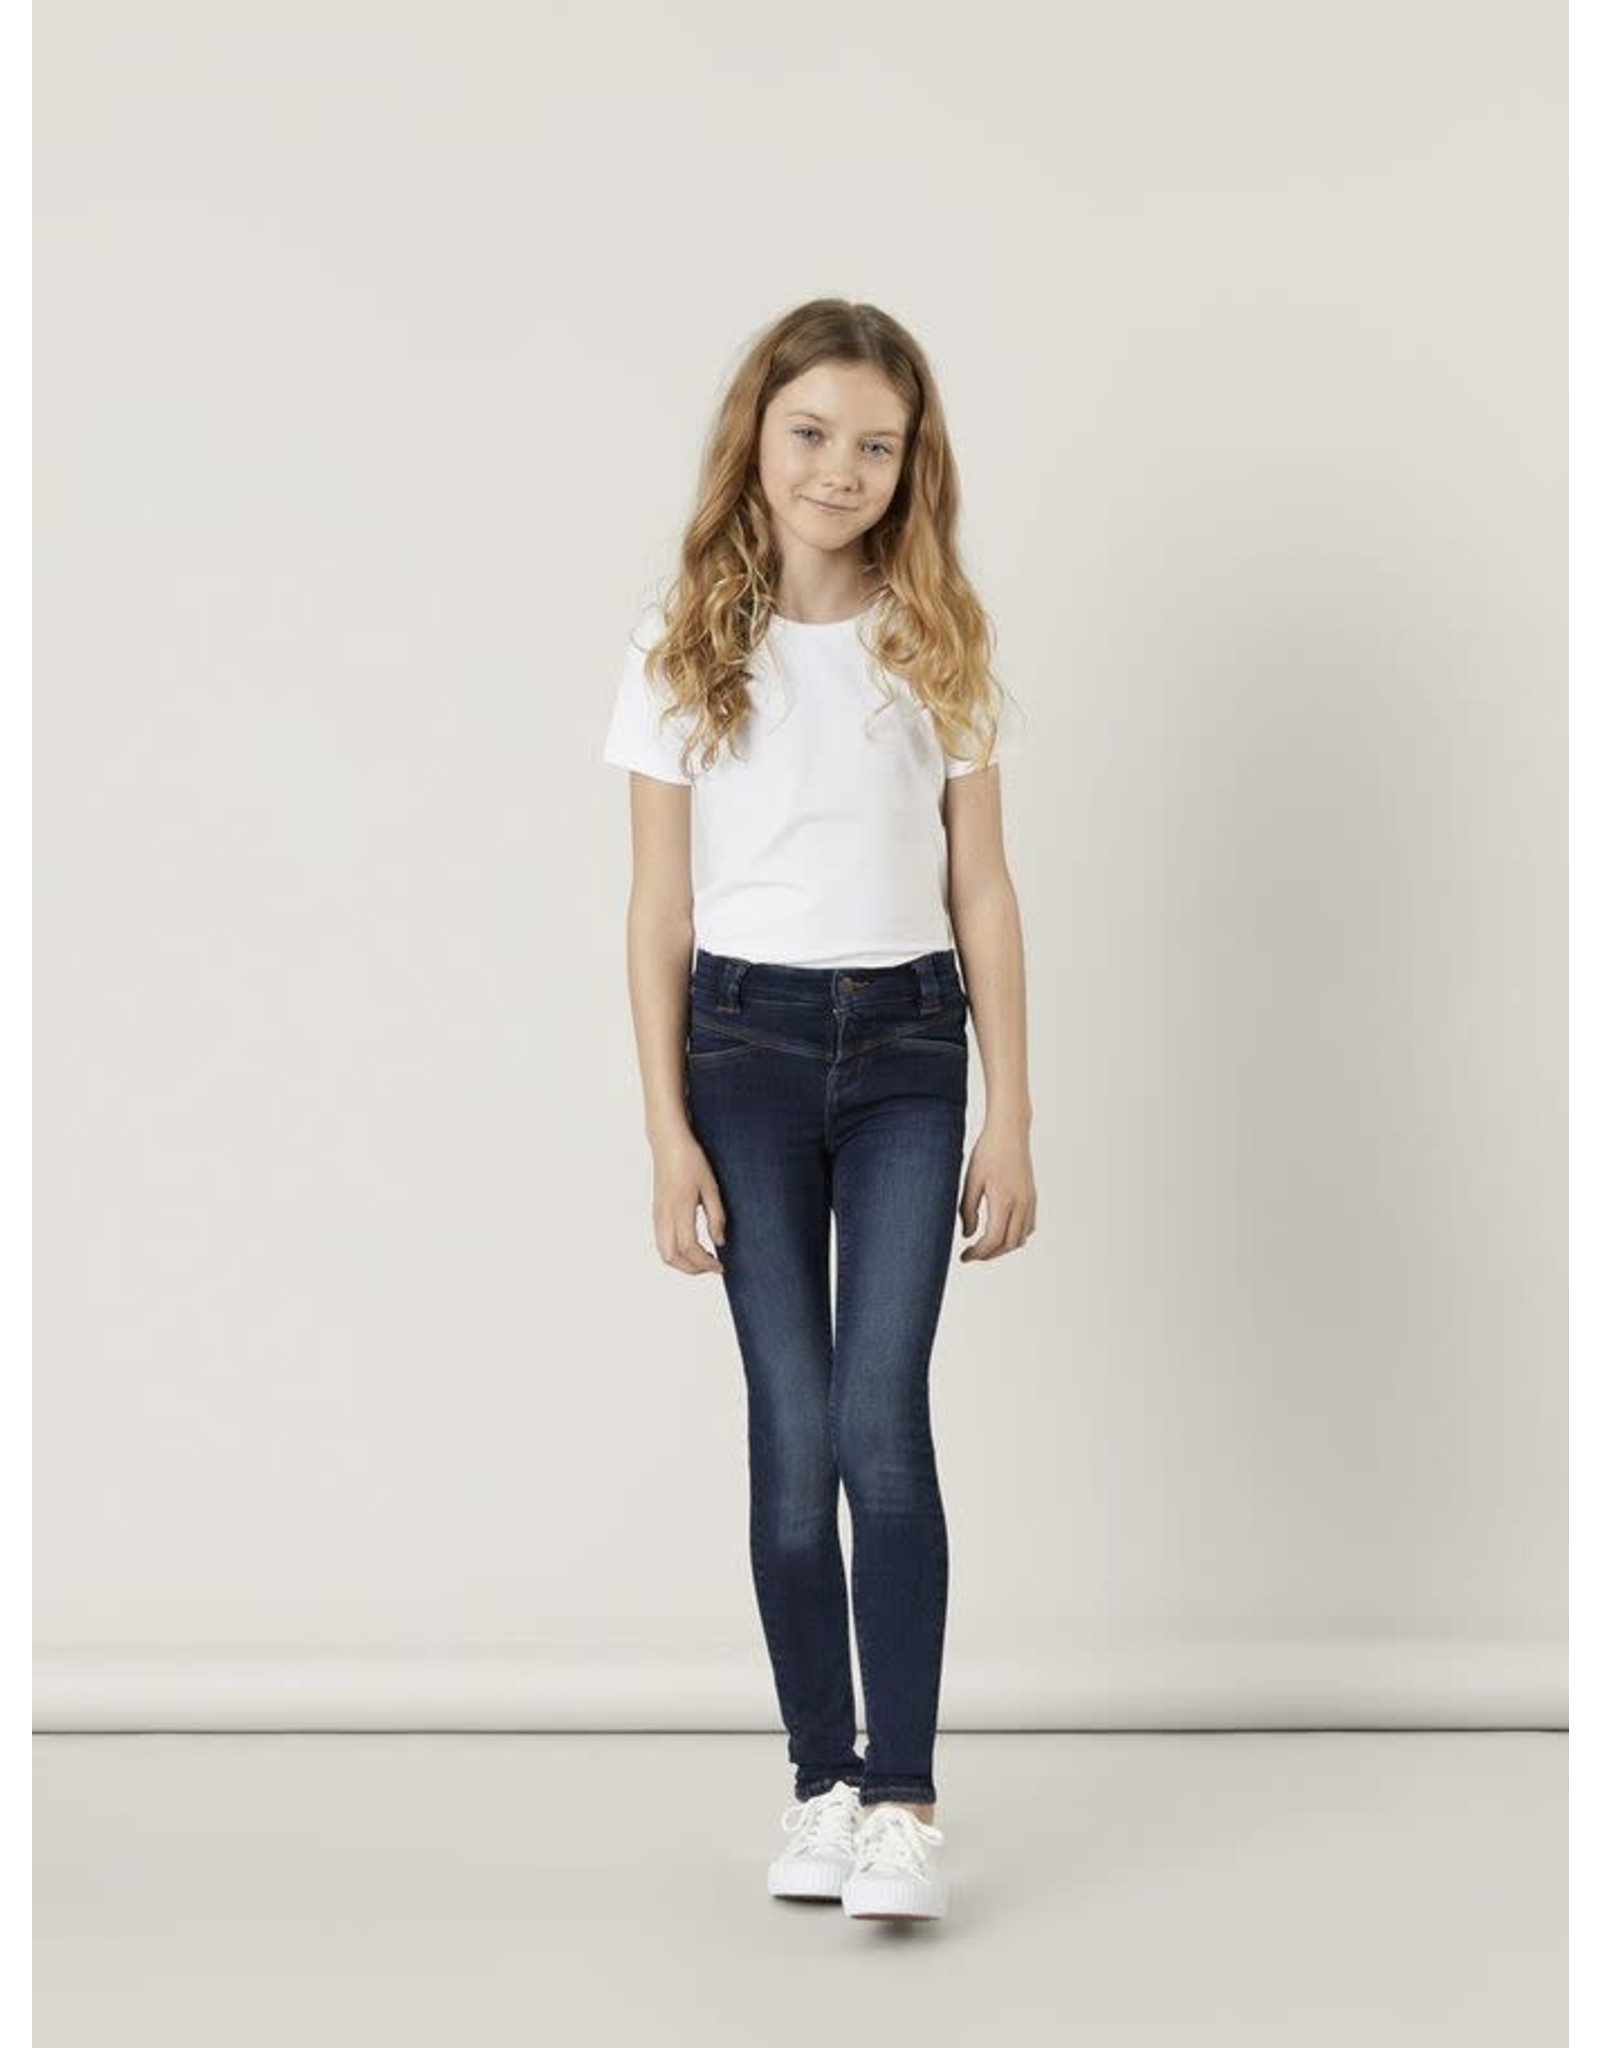 Donkerblauwe skinny jeans voor meisjes van Name It | hejsan.be - Hejsan  Hoppsan